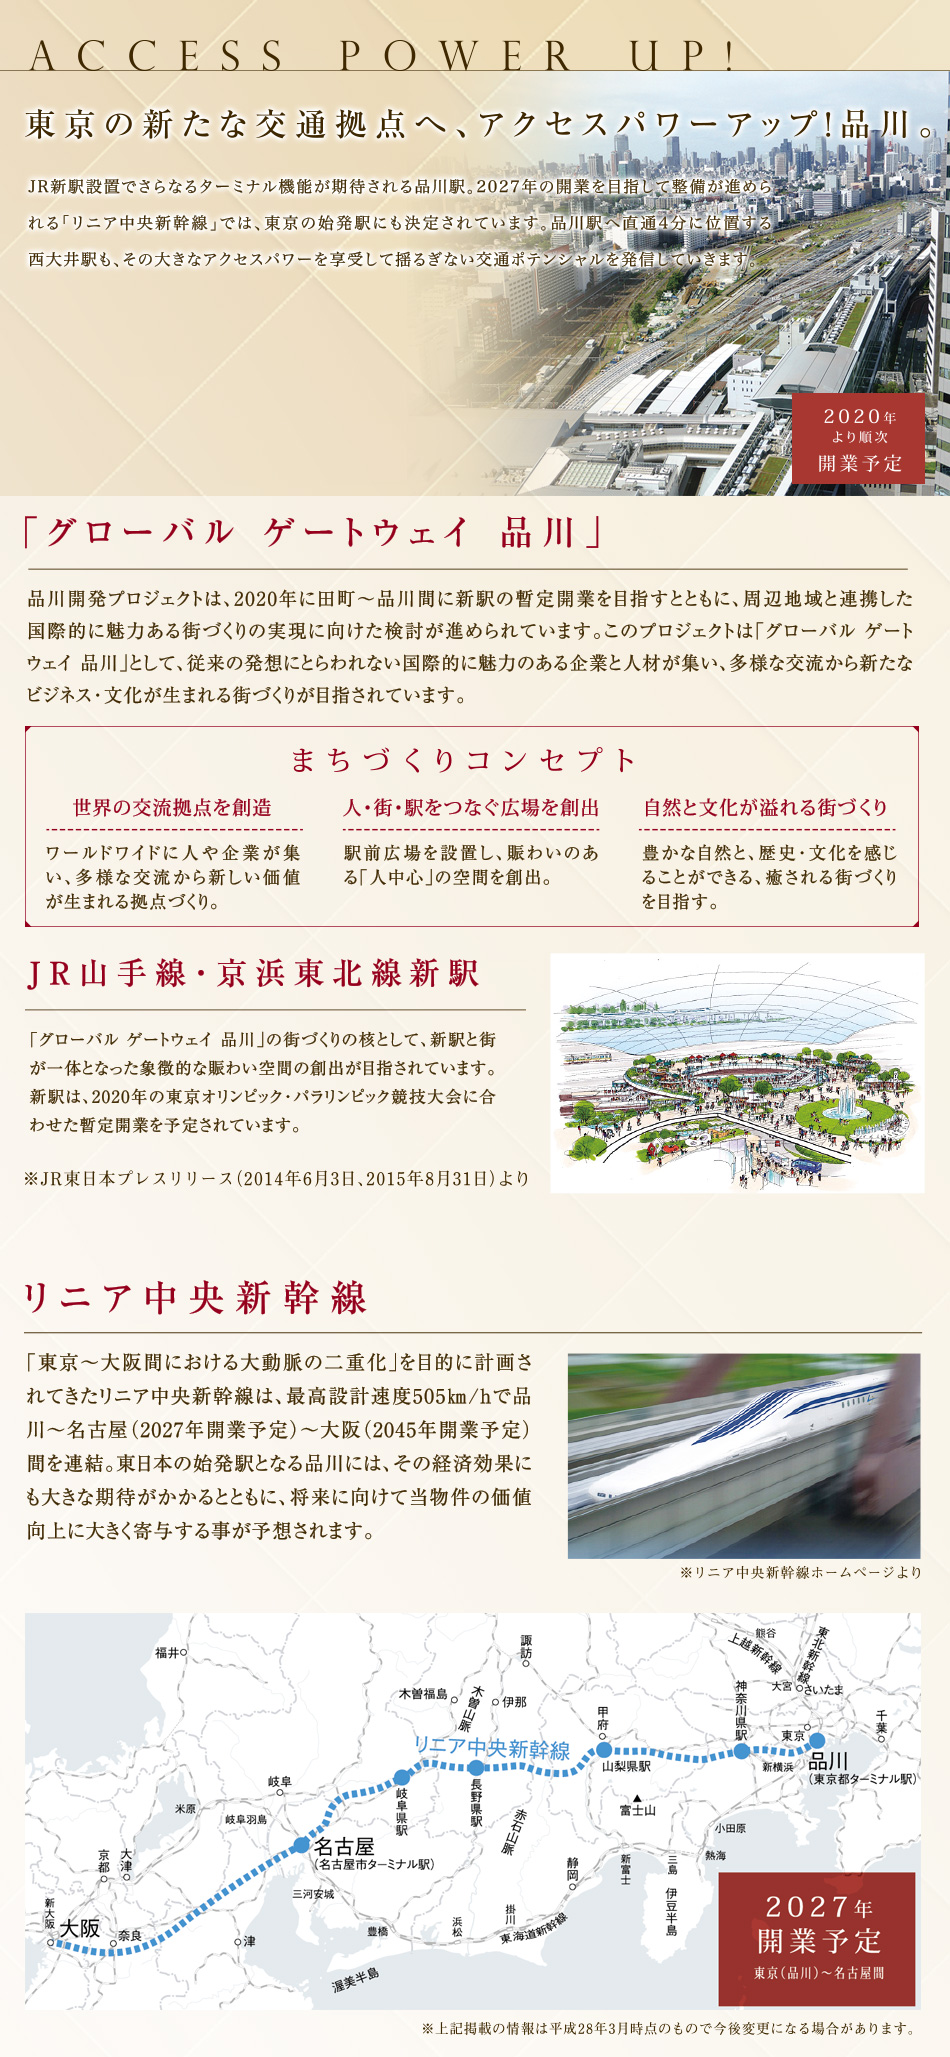 東京の新たな交通拠点へ、アクセスパワーアップ！品川